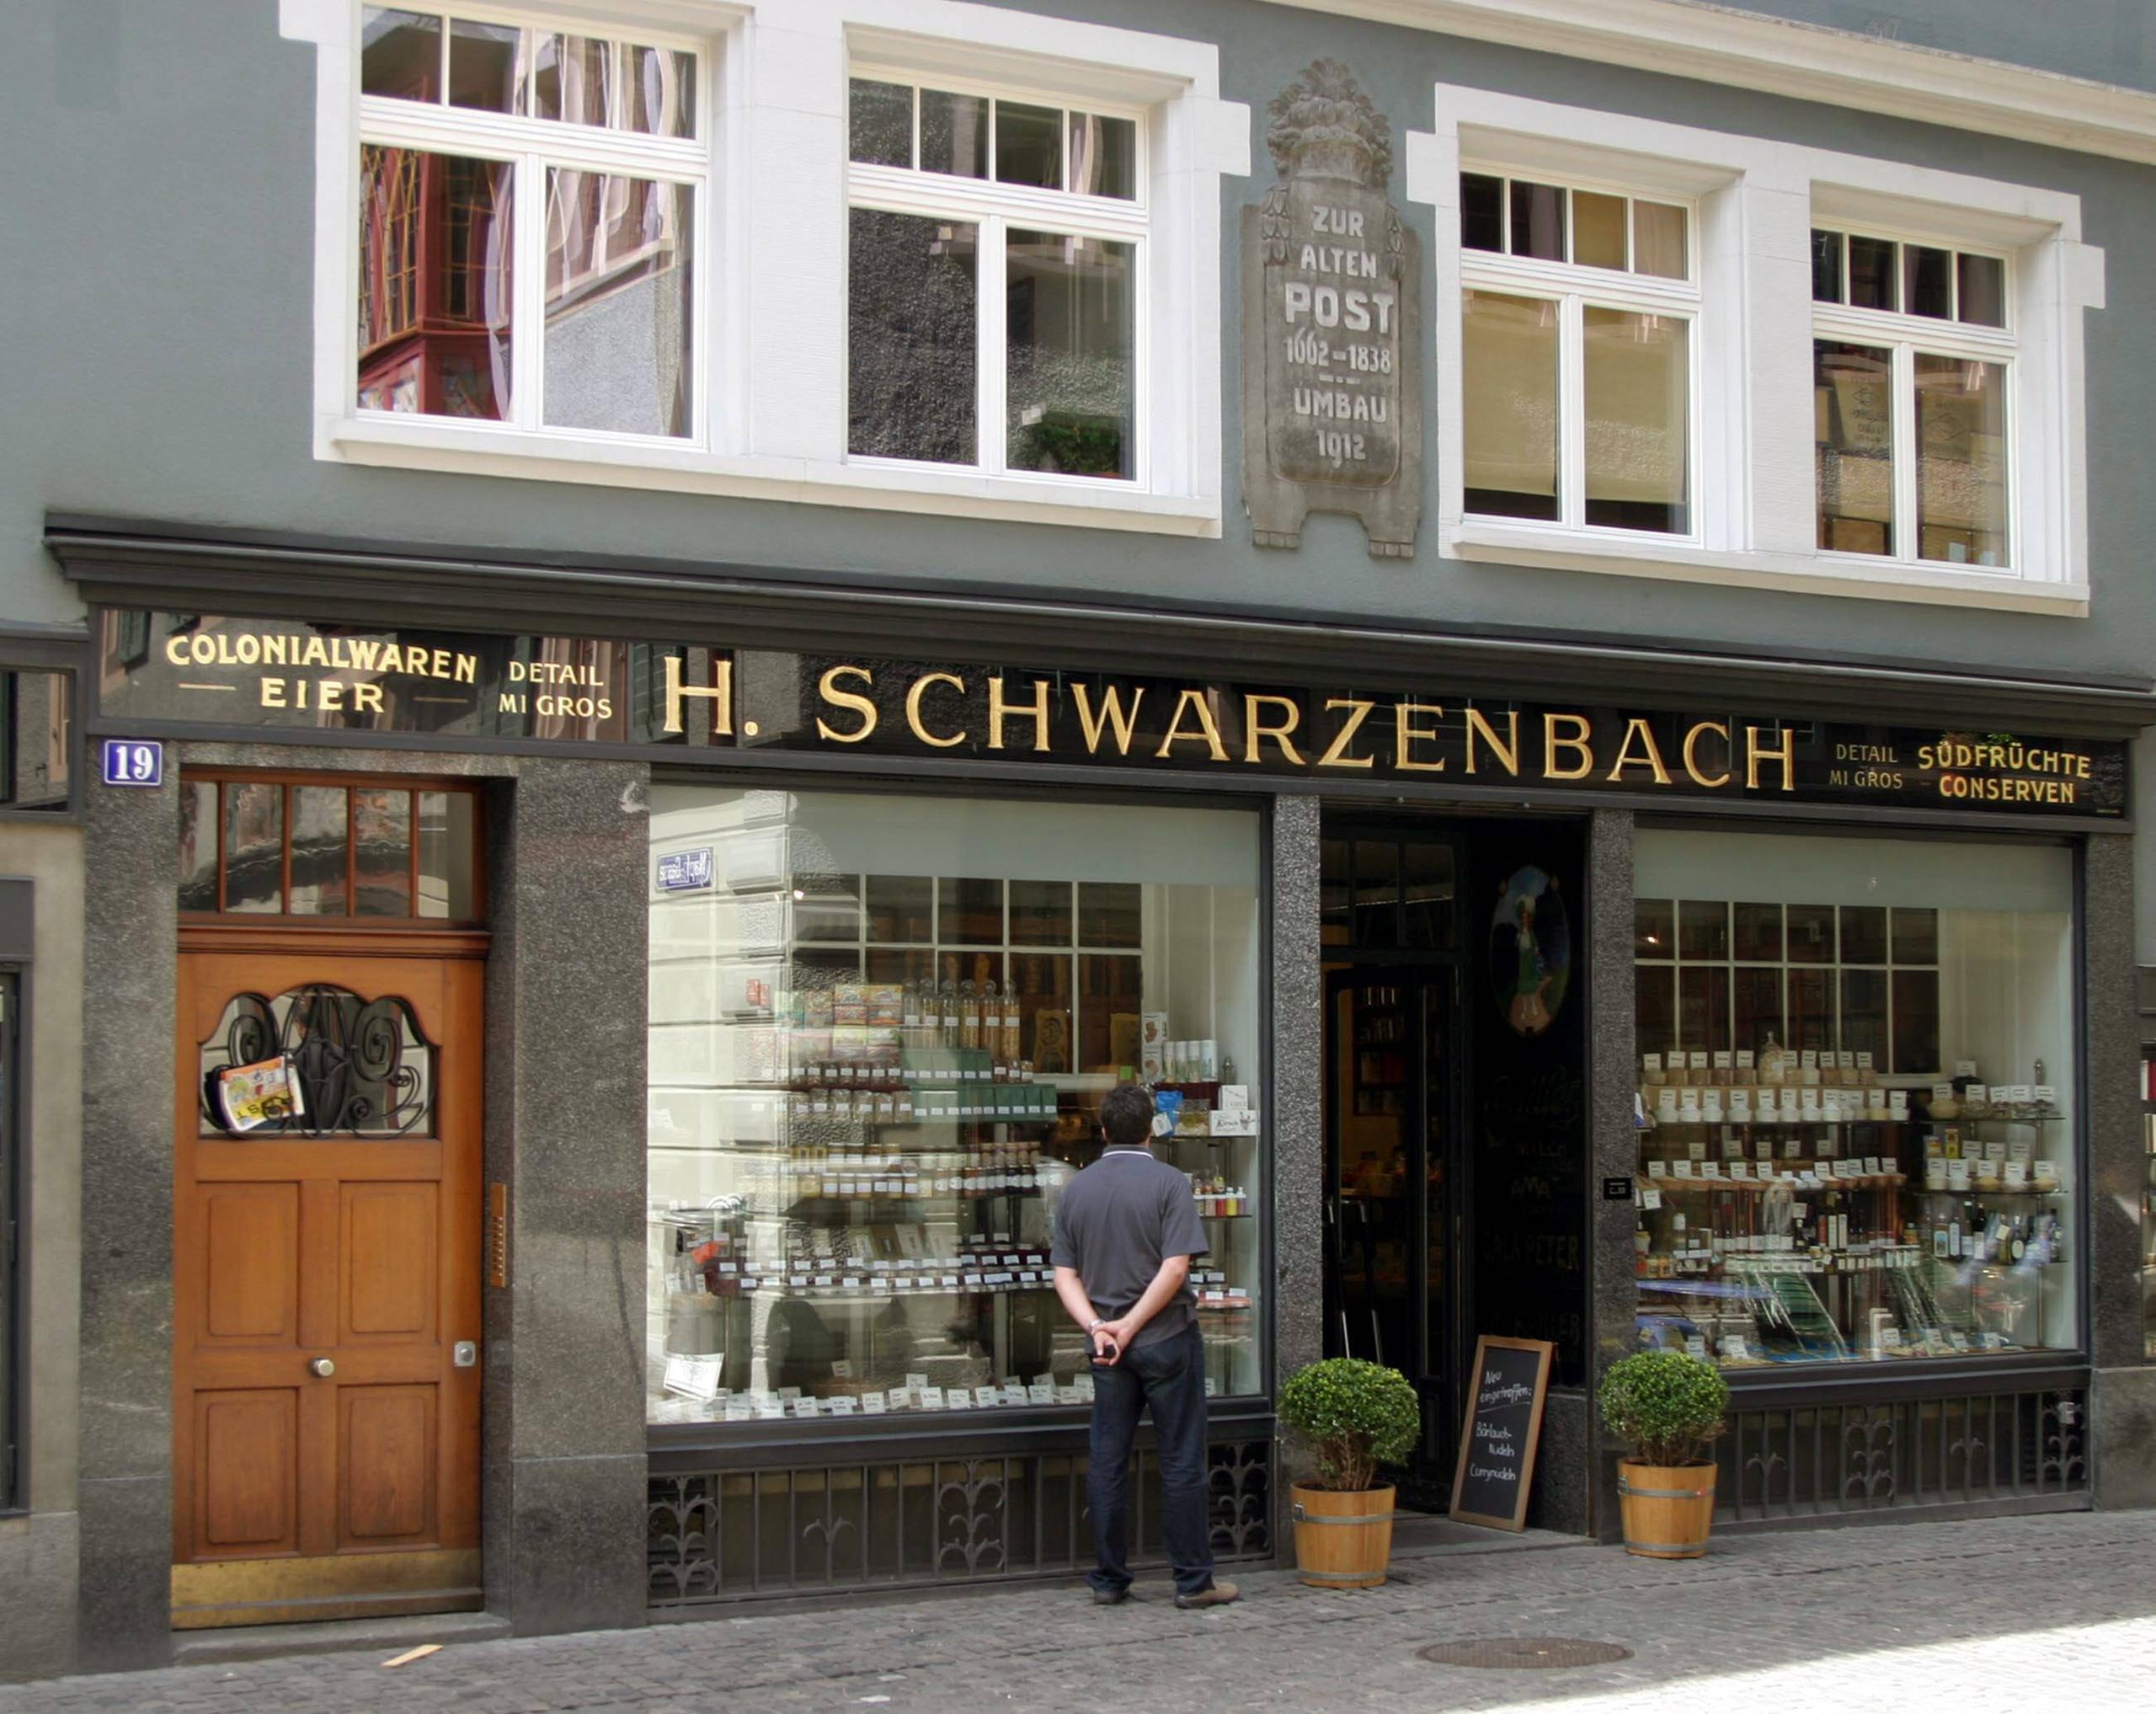 Fachada da loja Schwarzenbach, em Zurique